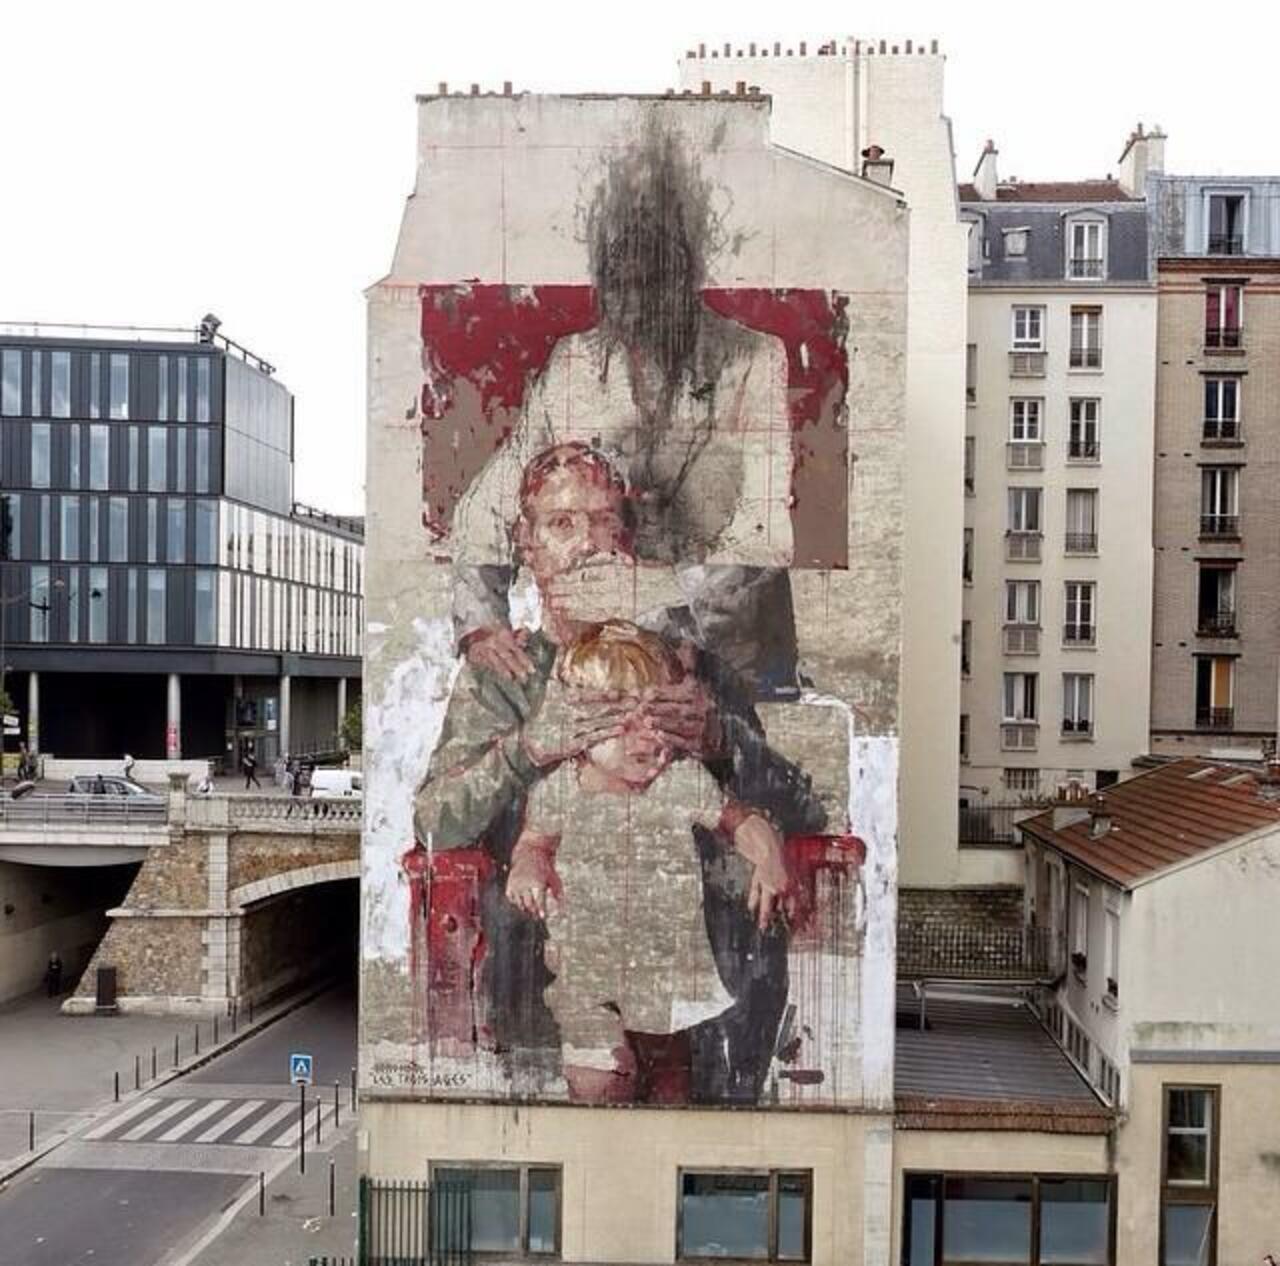 RT @GoogleStreetArt: New large scale Street Art by Borondo in Paris, France. 

#art #mural #graffiti #streetart http://t.co/eGYs8euWp2